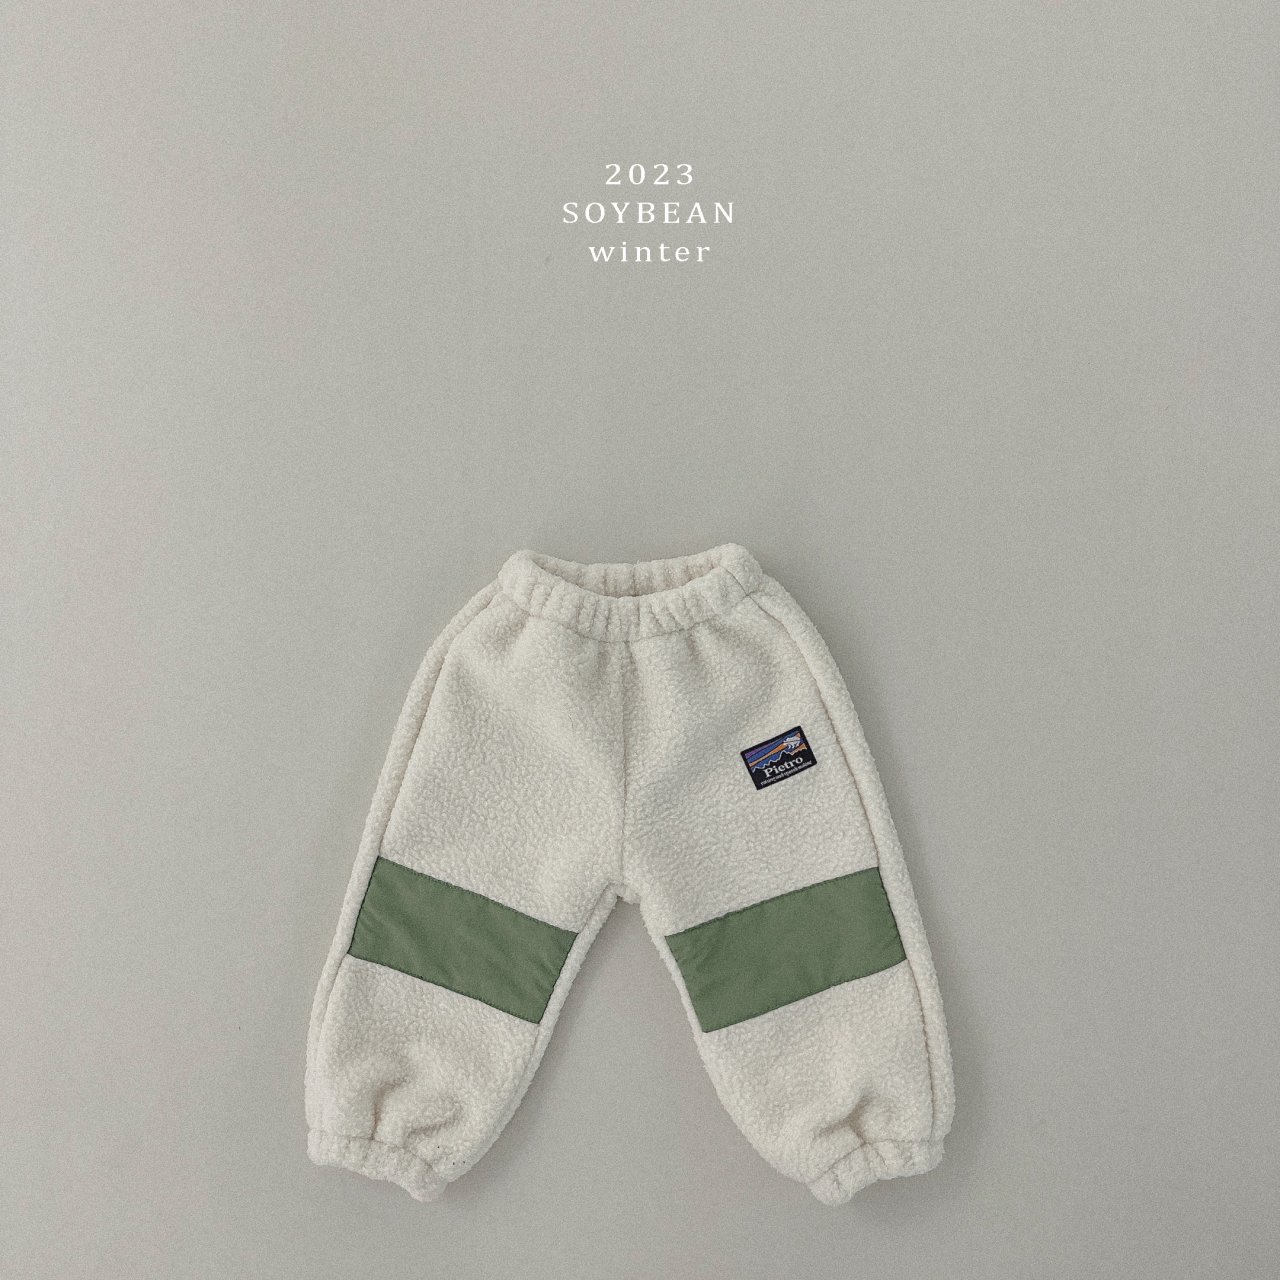 Soybean] Contrast Kids Fleece Winter Pants 